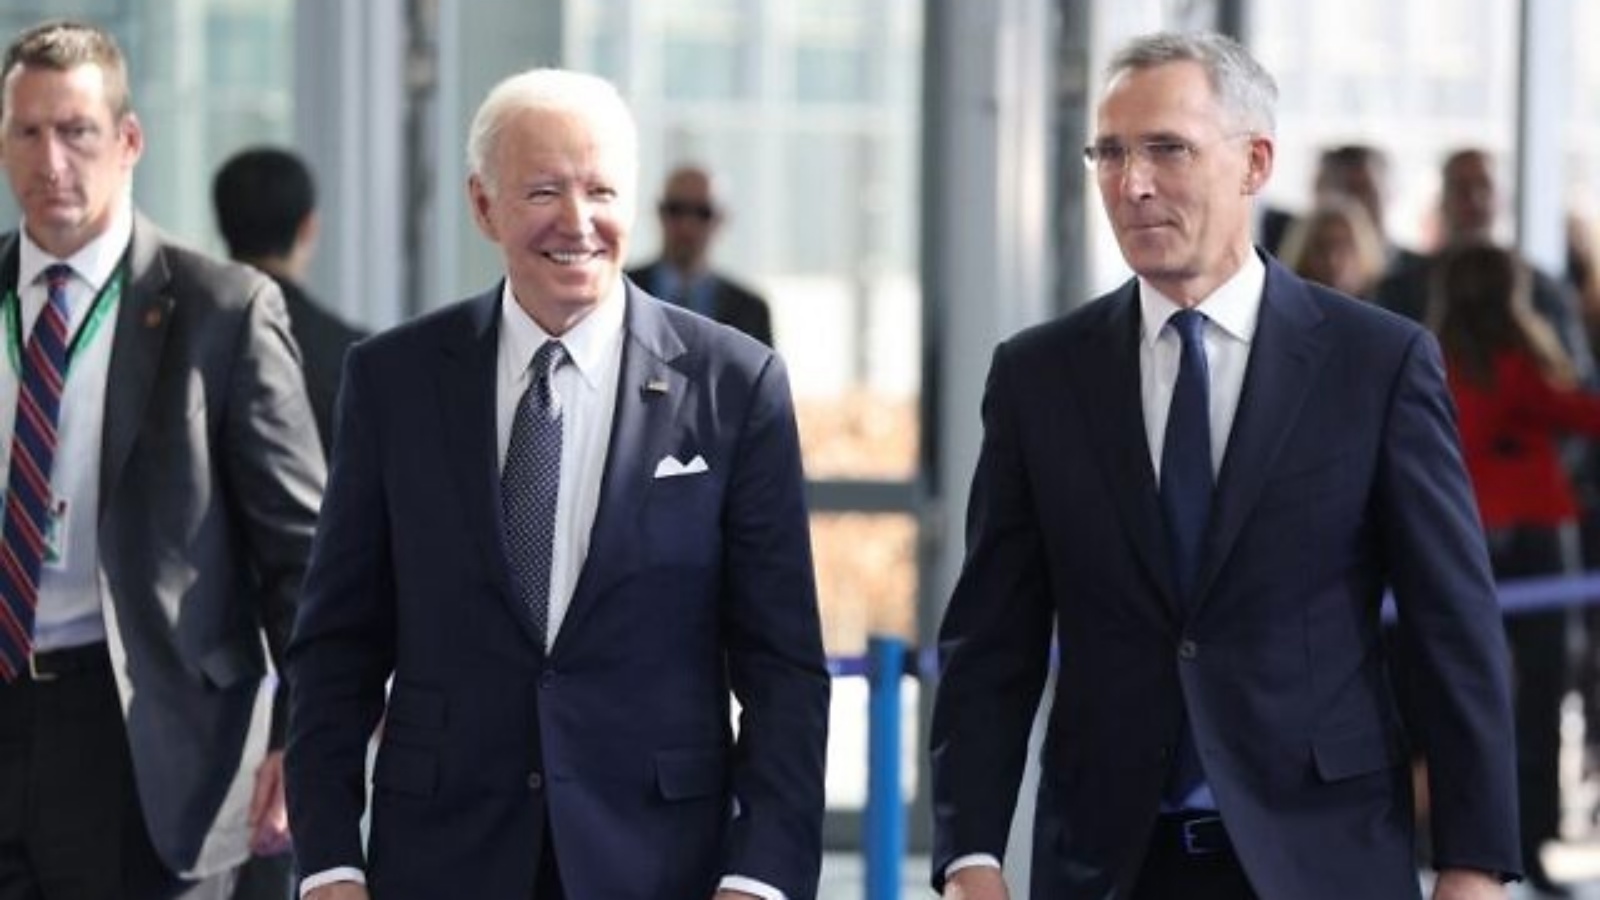 الرئيس الأمريكي جو بايدن (يسار) والأمين العام لحلف شمال الأطلسي ينس ستولتنبرغ (يمين) يصلان قبل قمة الناتو الاستثنائية في مقر الناتو في بروكسل في 24 آذار (مارس) 2022